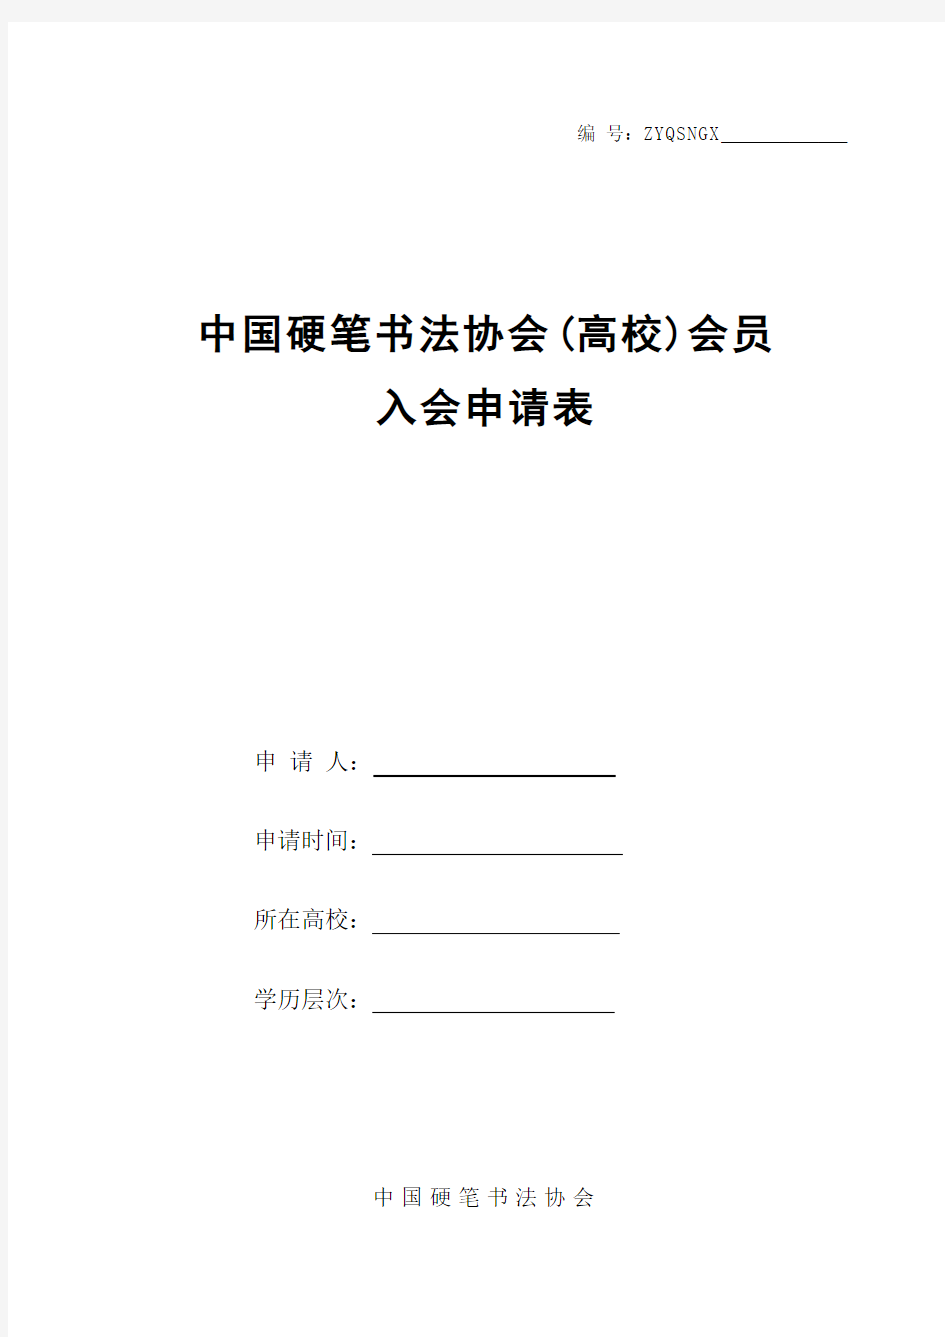 中国硬笔书法协会(高校)会员申请表